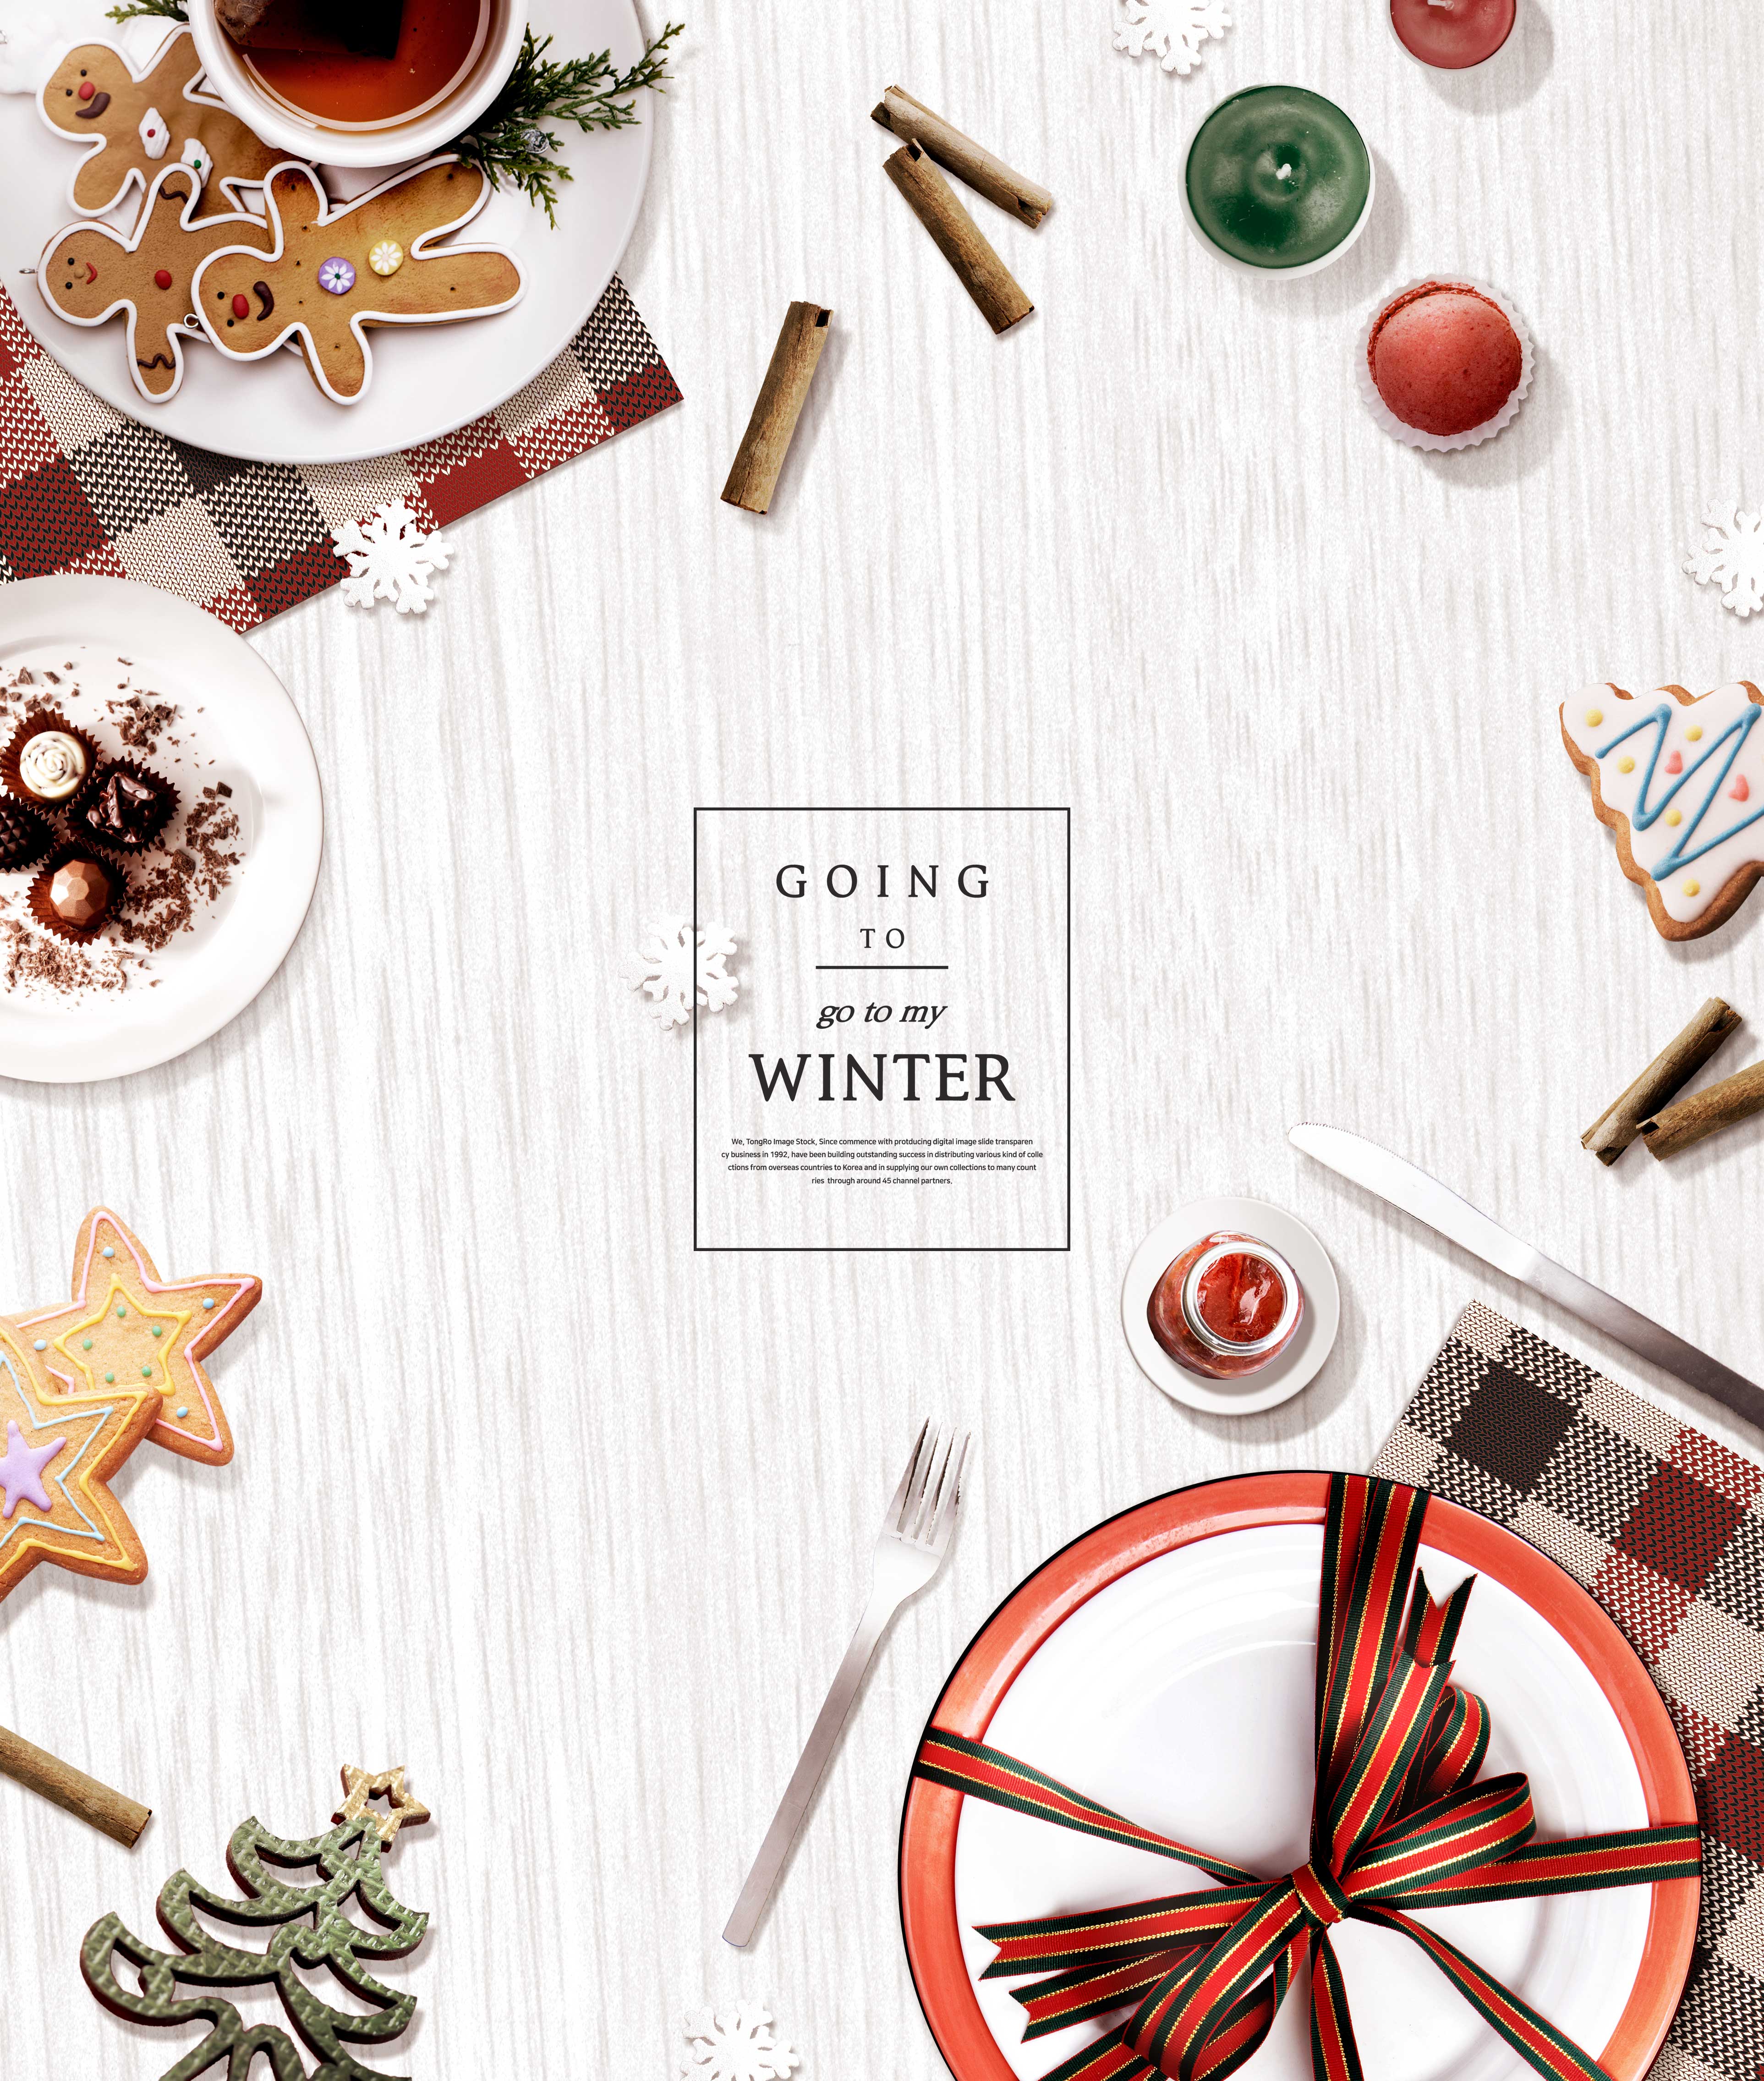 冬季海报圣诞零食元素设计素材设计素材模板